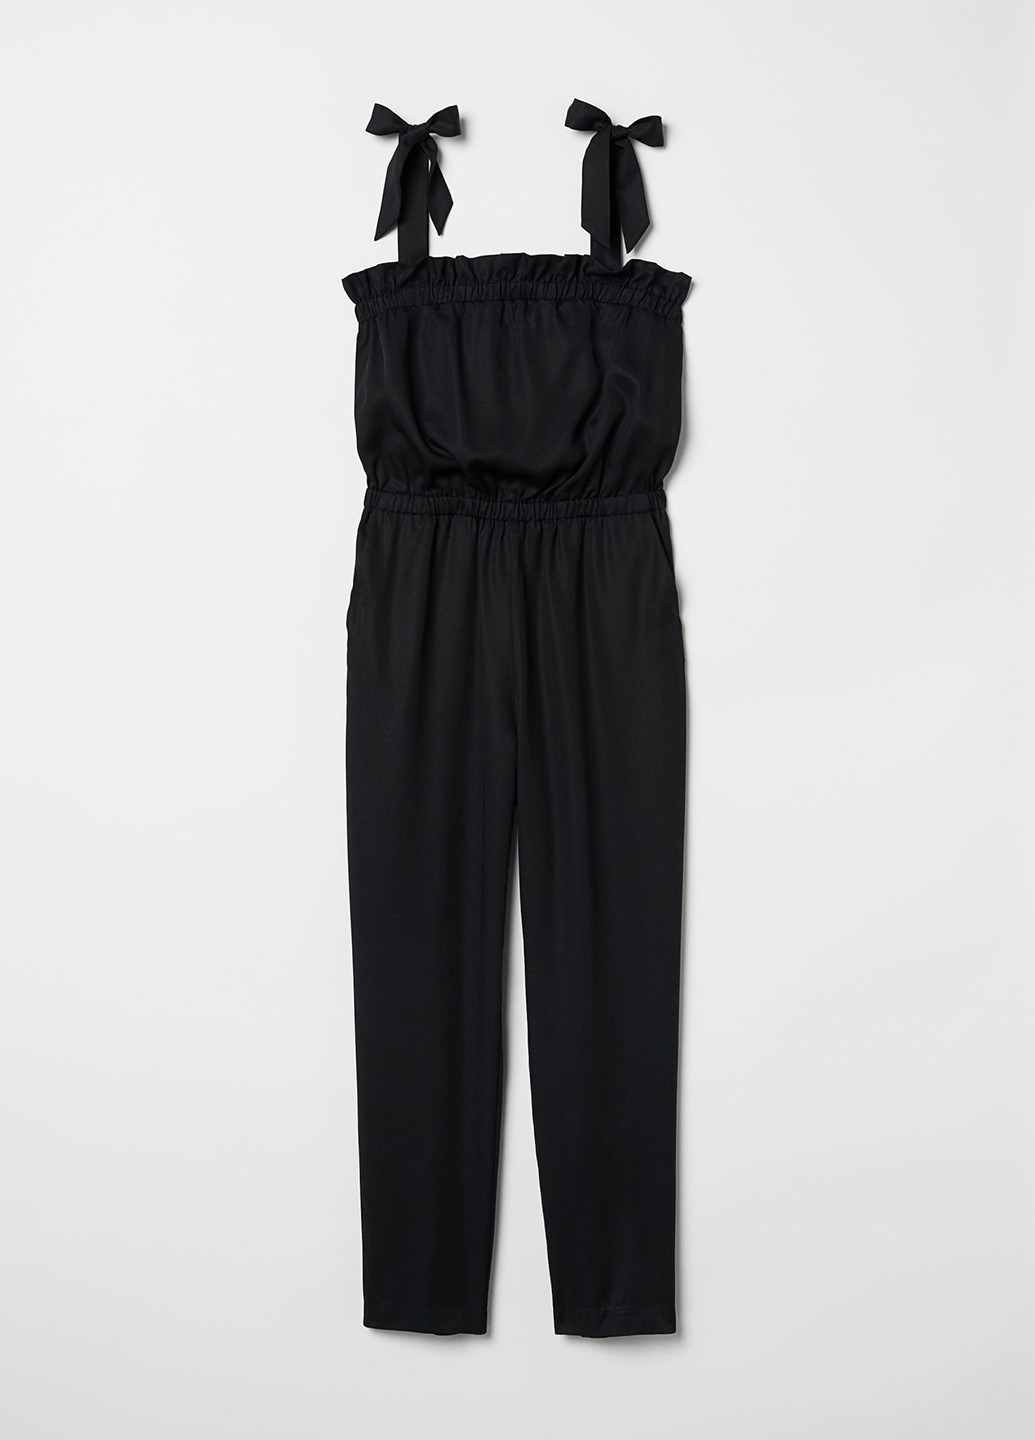 Комбинезон H&M комбинезон-брюки однотонный чёрный кэжуал лиоцелл